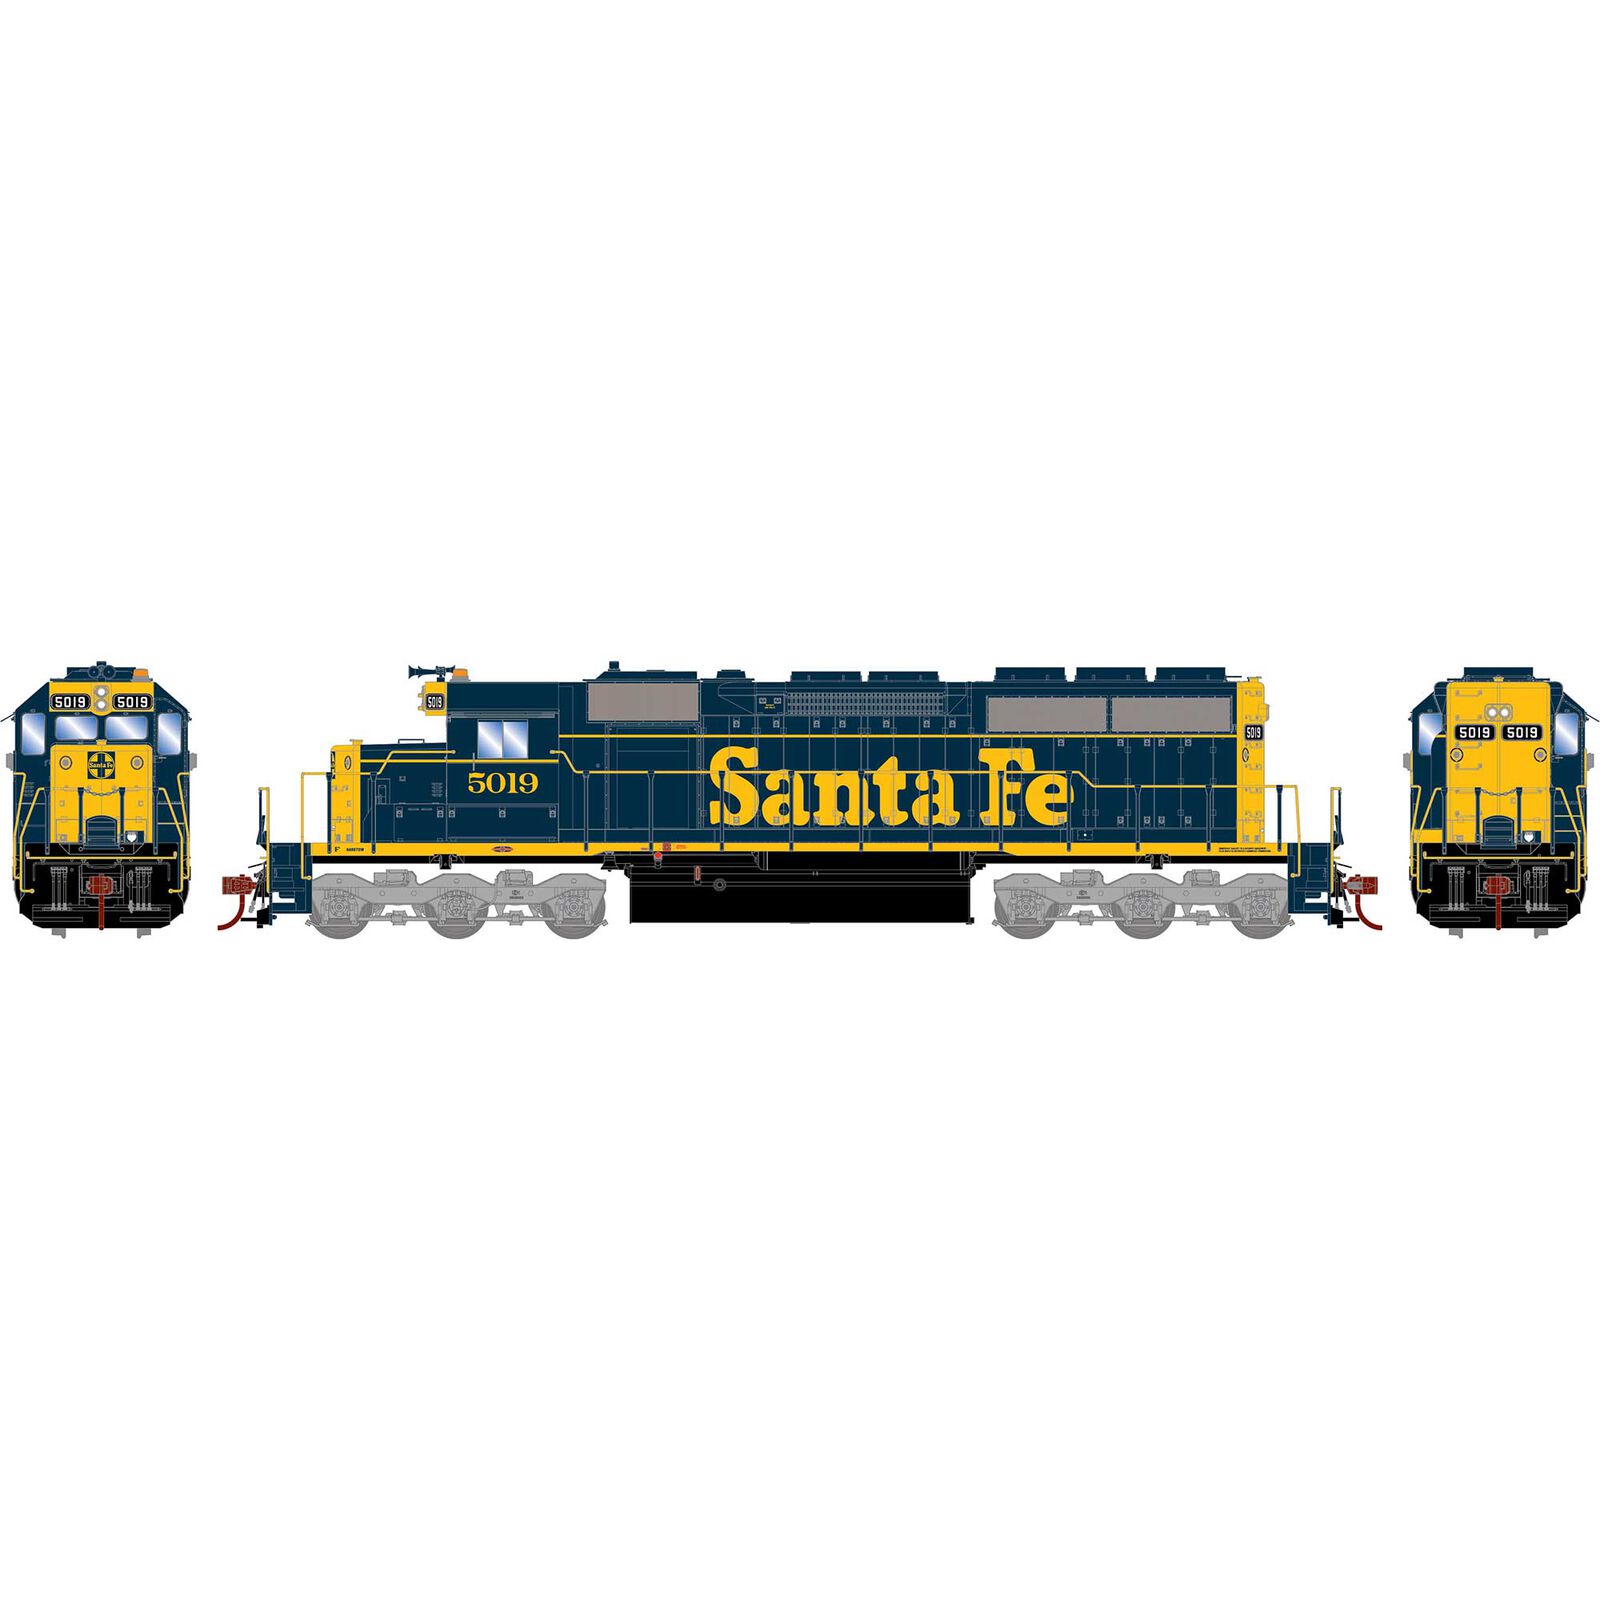 HO SD40 Locomotive, Santa Fe #5019